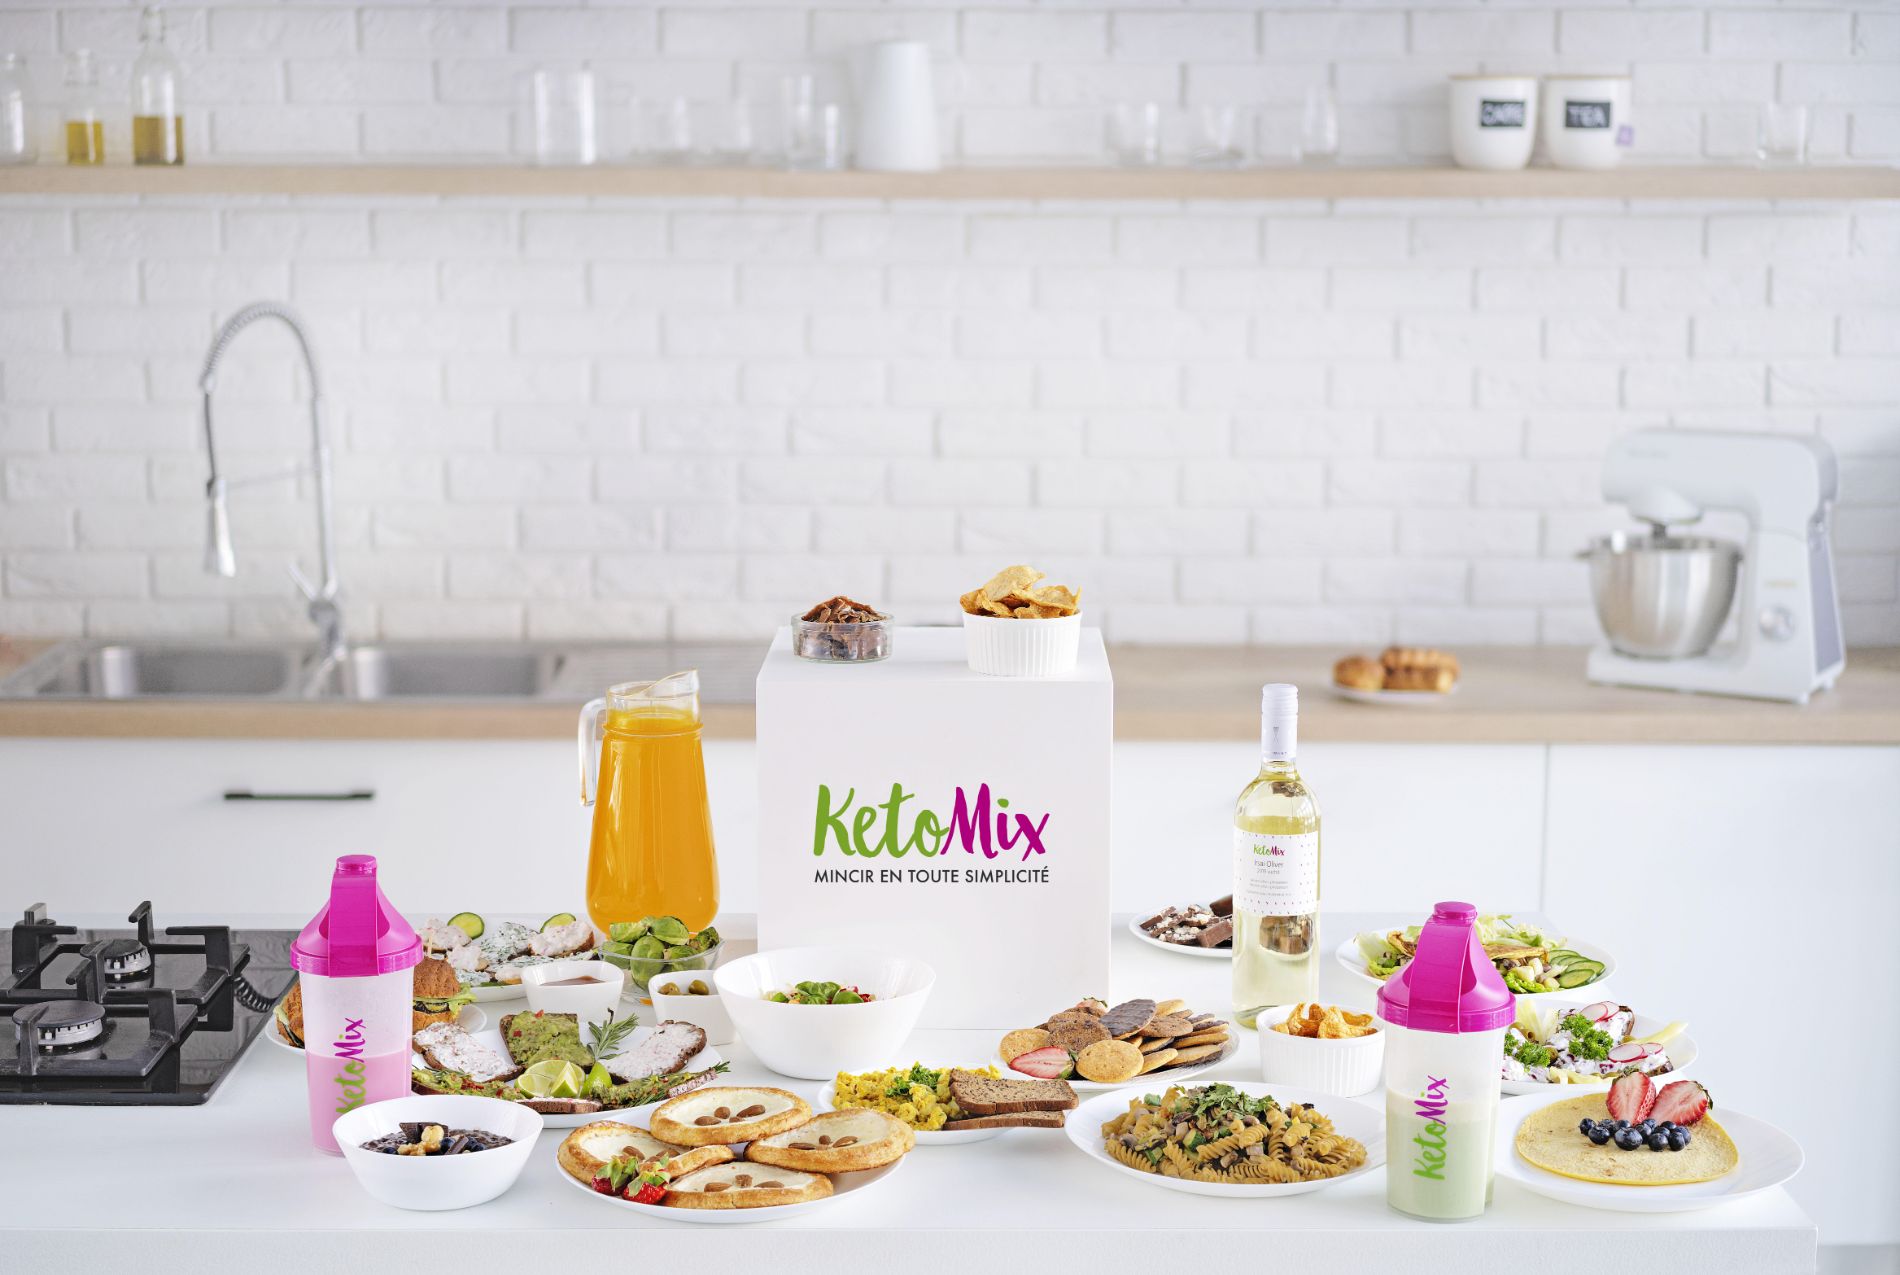 All-inclusive Pack für die ketogene Diät von KetoMix